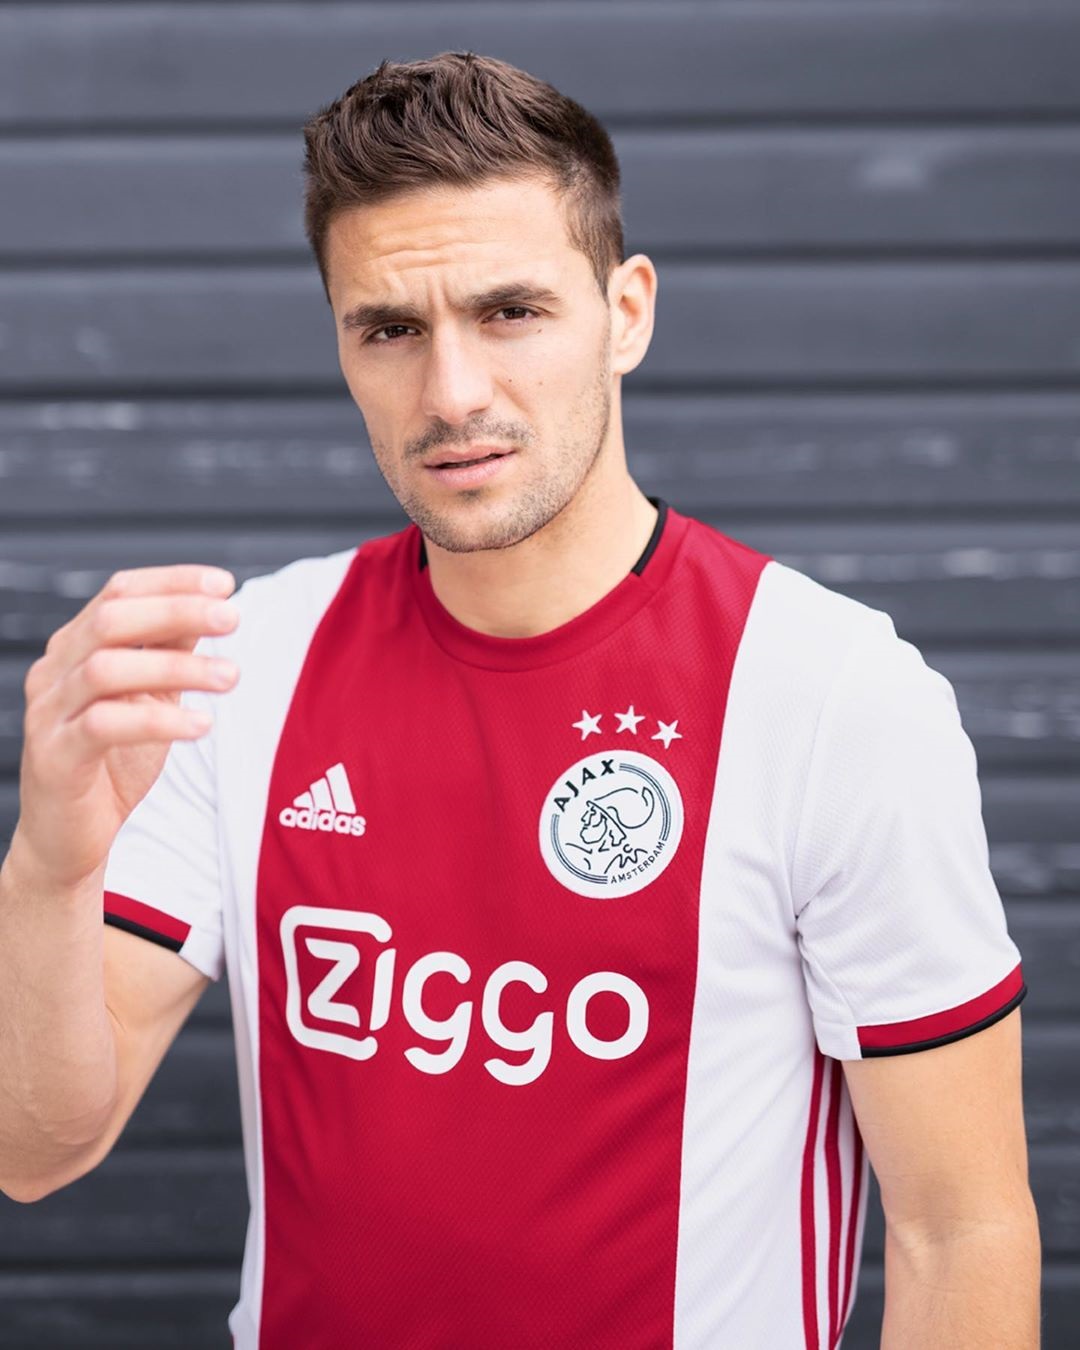 AFC Ajax adidas Home Kit 2019 2020 Tadic